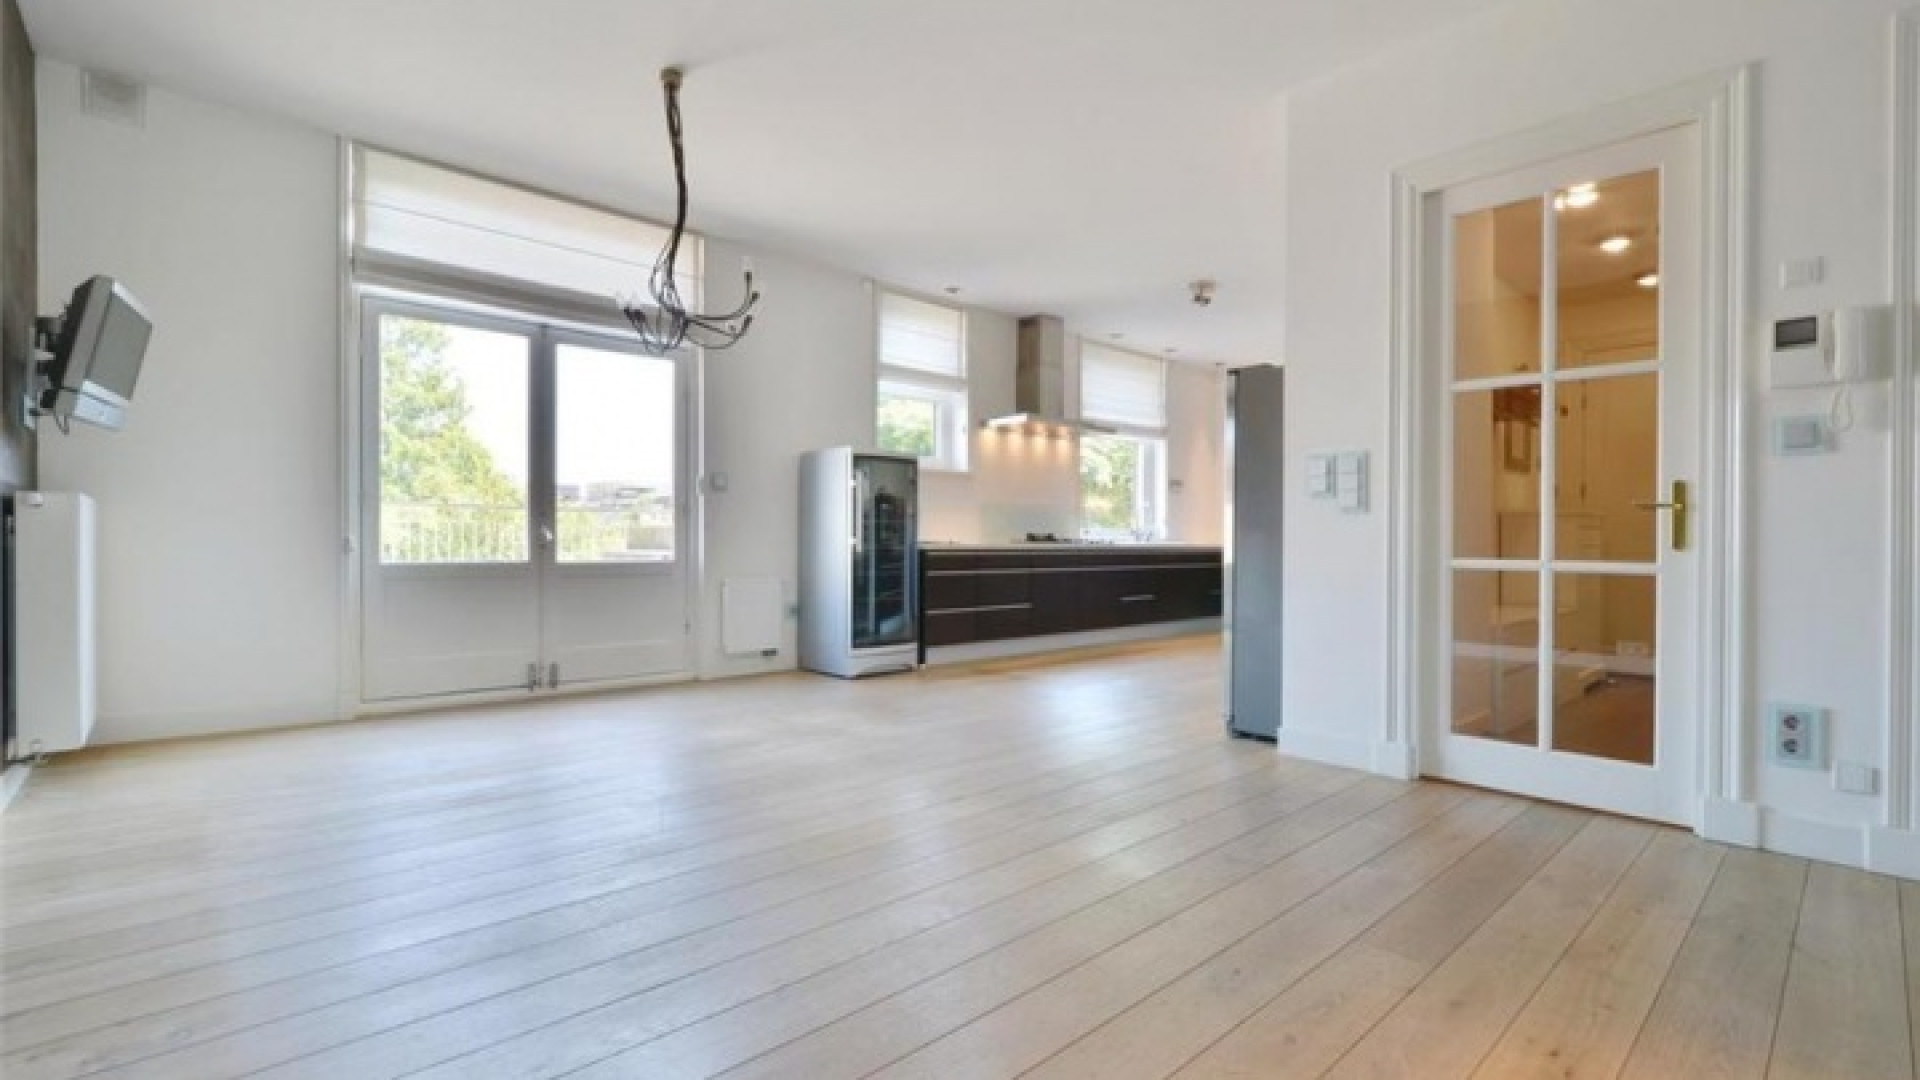 Frank Rijkaard zet zijn zeer luxe huis in Amsterdam Zuid te koop. Zie foto's